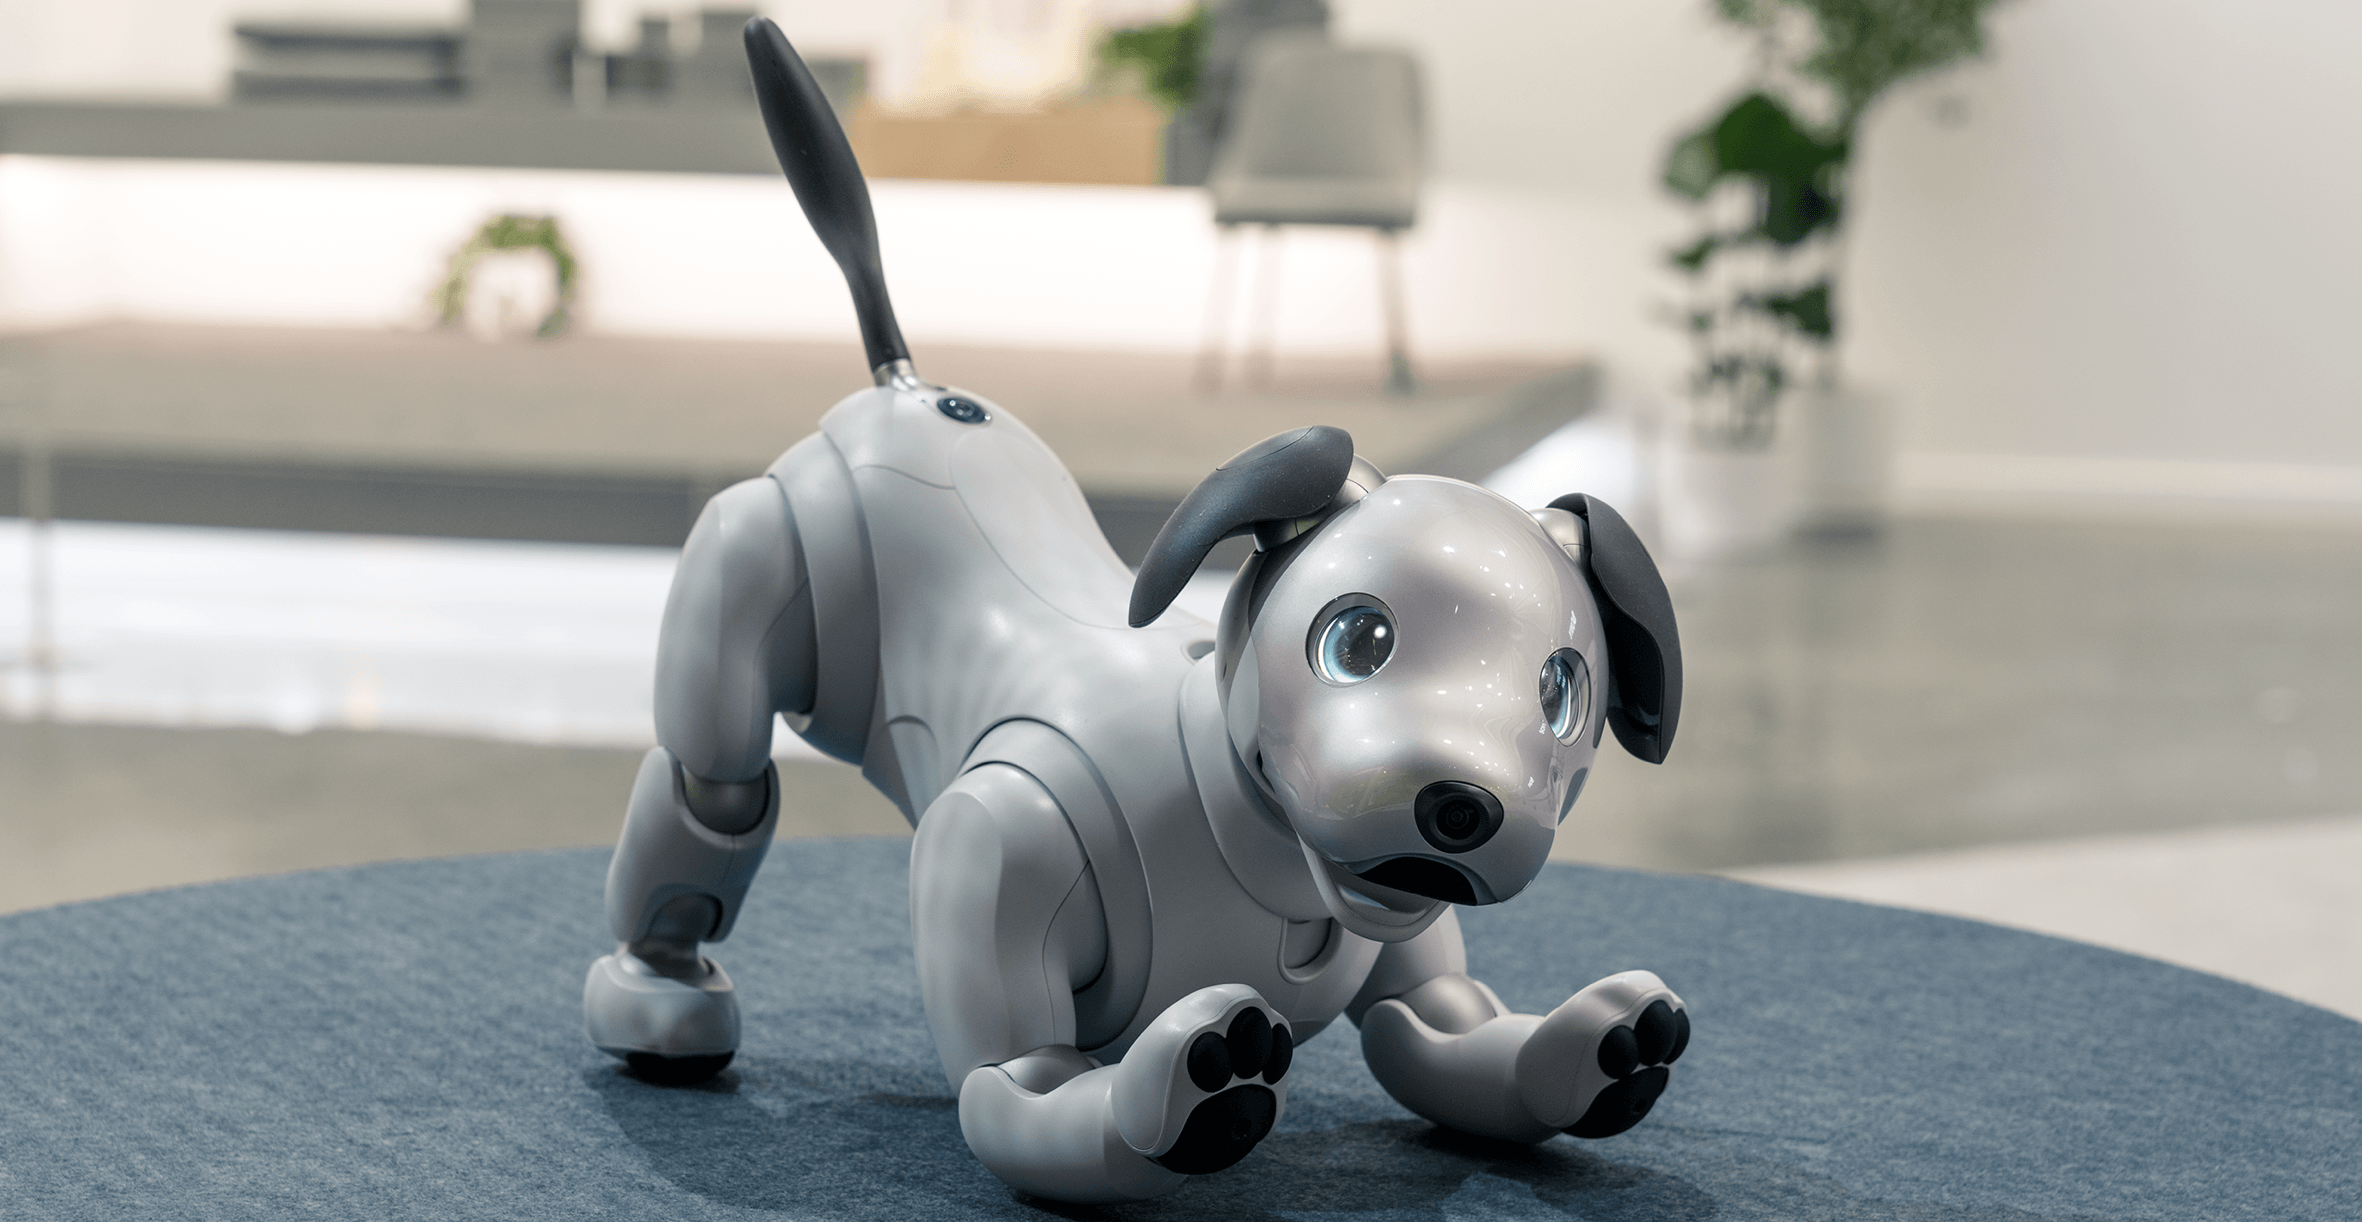 Sony’nin Sahibini Tanıyan Robot Köpeği Aibo